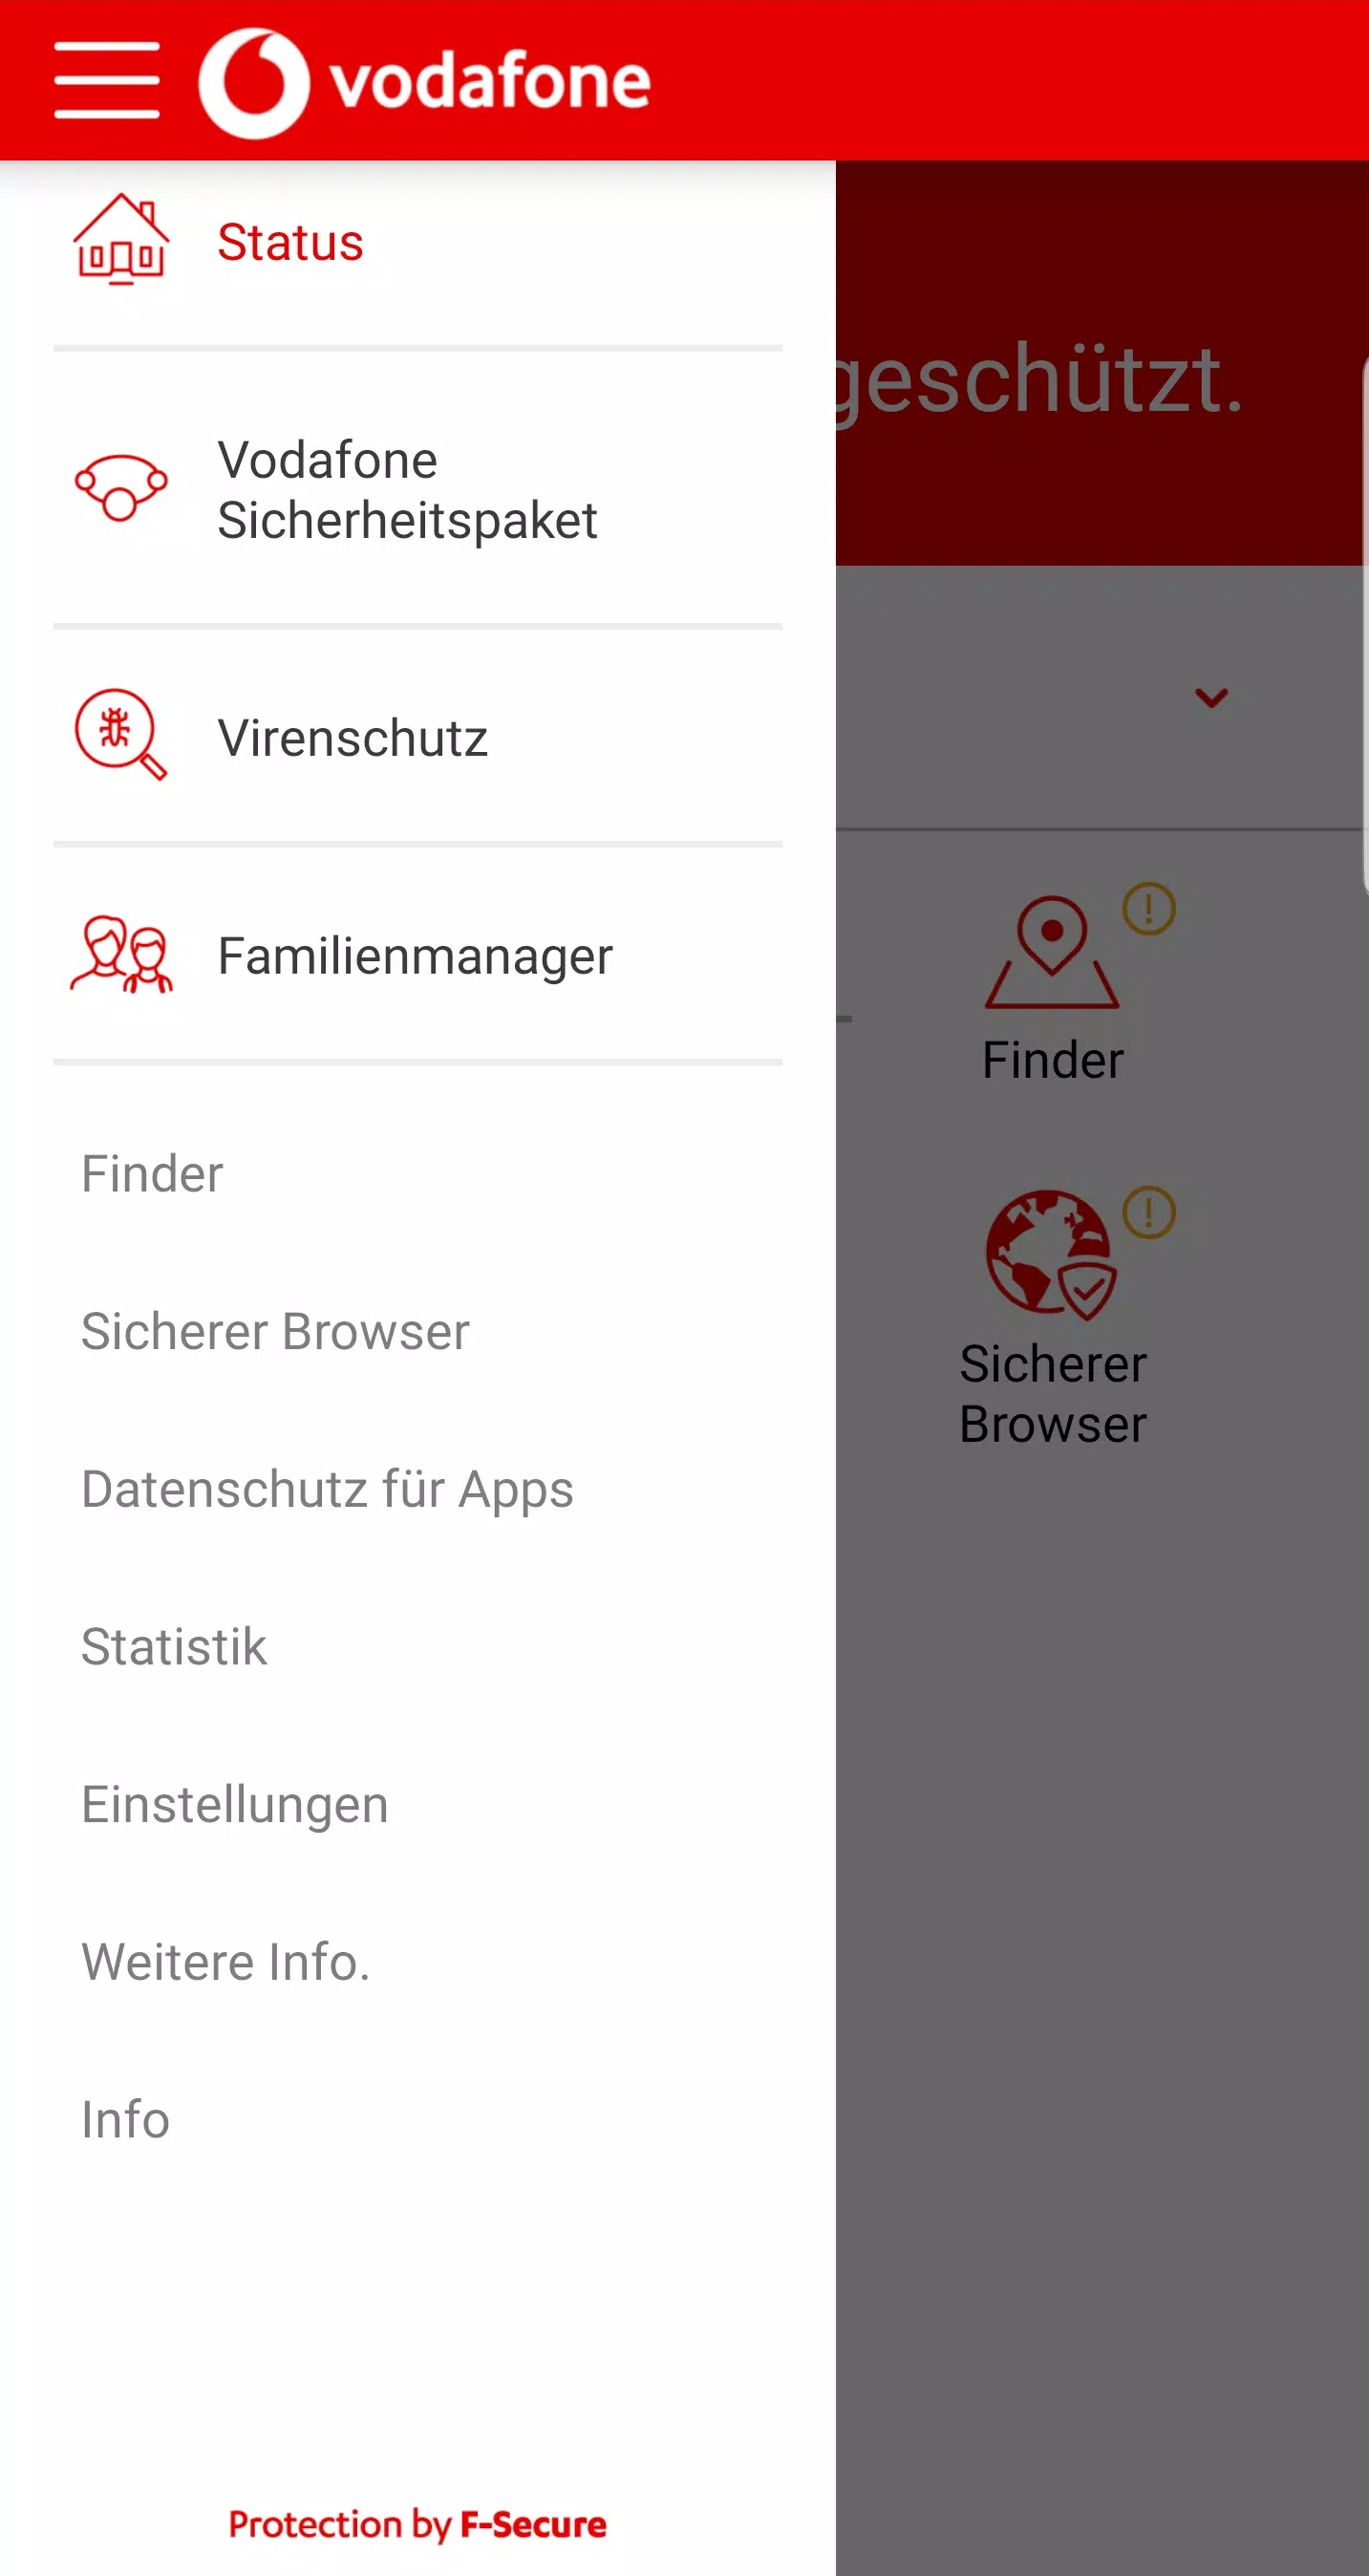 Vodafone Sicherheitspaket for Android - APK Download